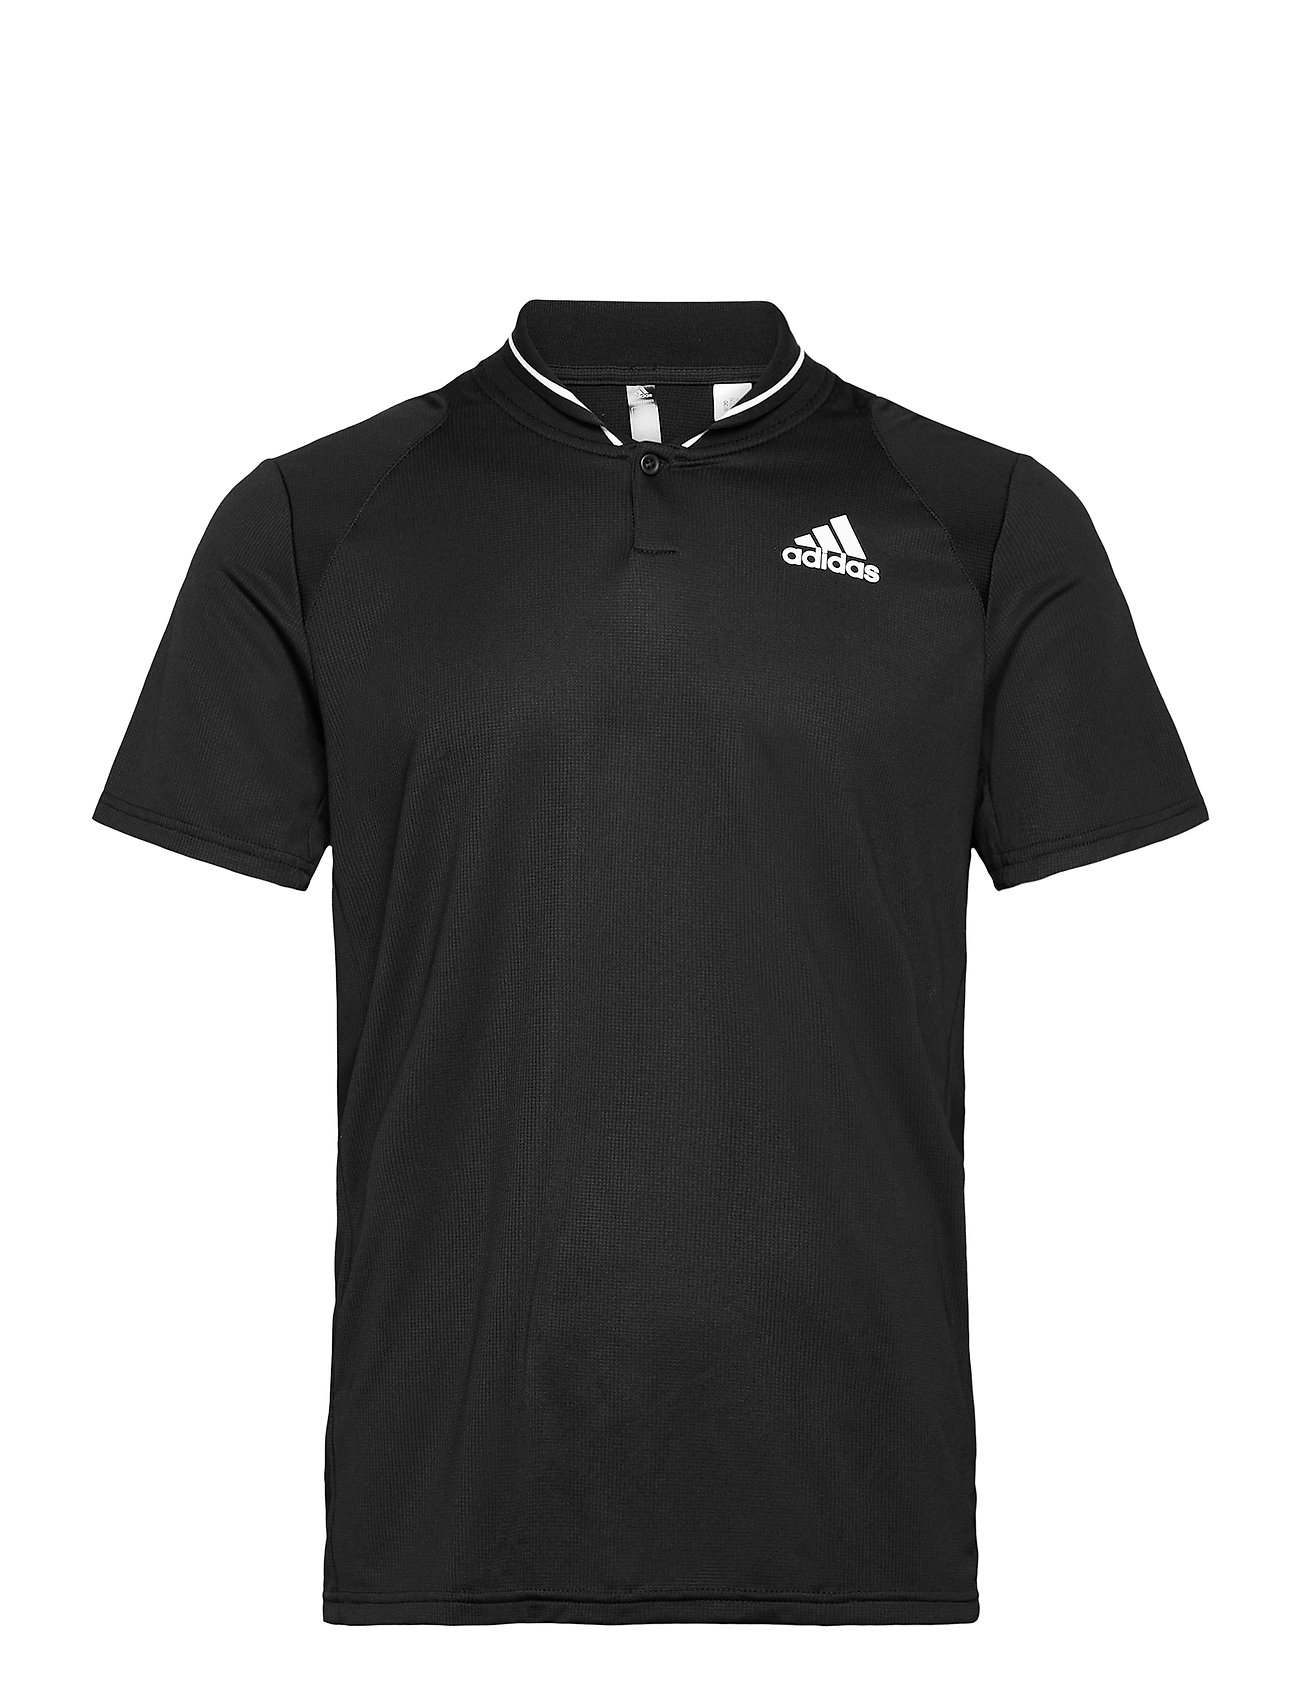 Club Rib Polo Shirt Polos Short-sleeved Musta Adidas Performance, adidas Performance